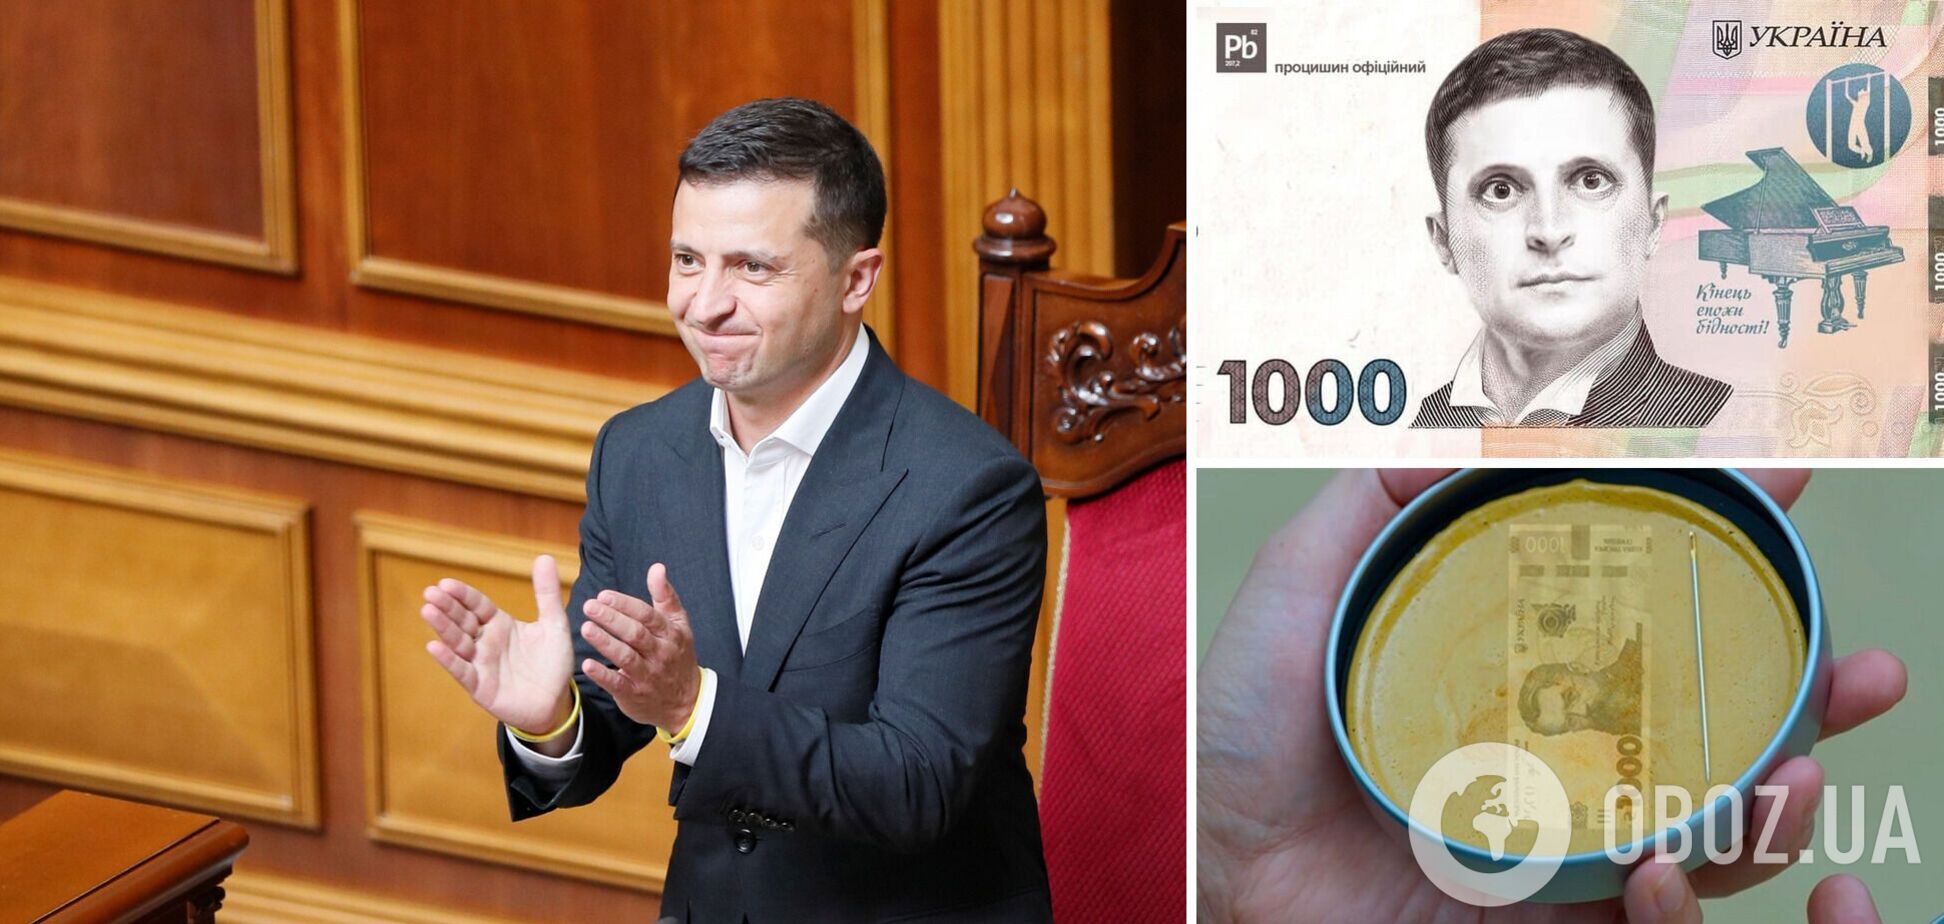 'Вовина тисяча' для вакцинованих: українці потролили ініціативу Зеленського. Фото